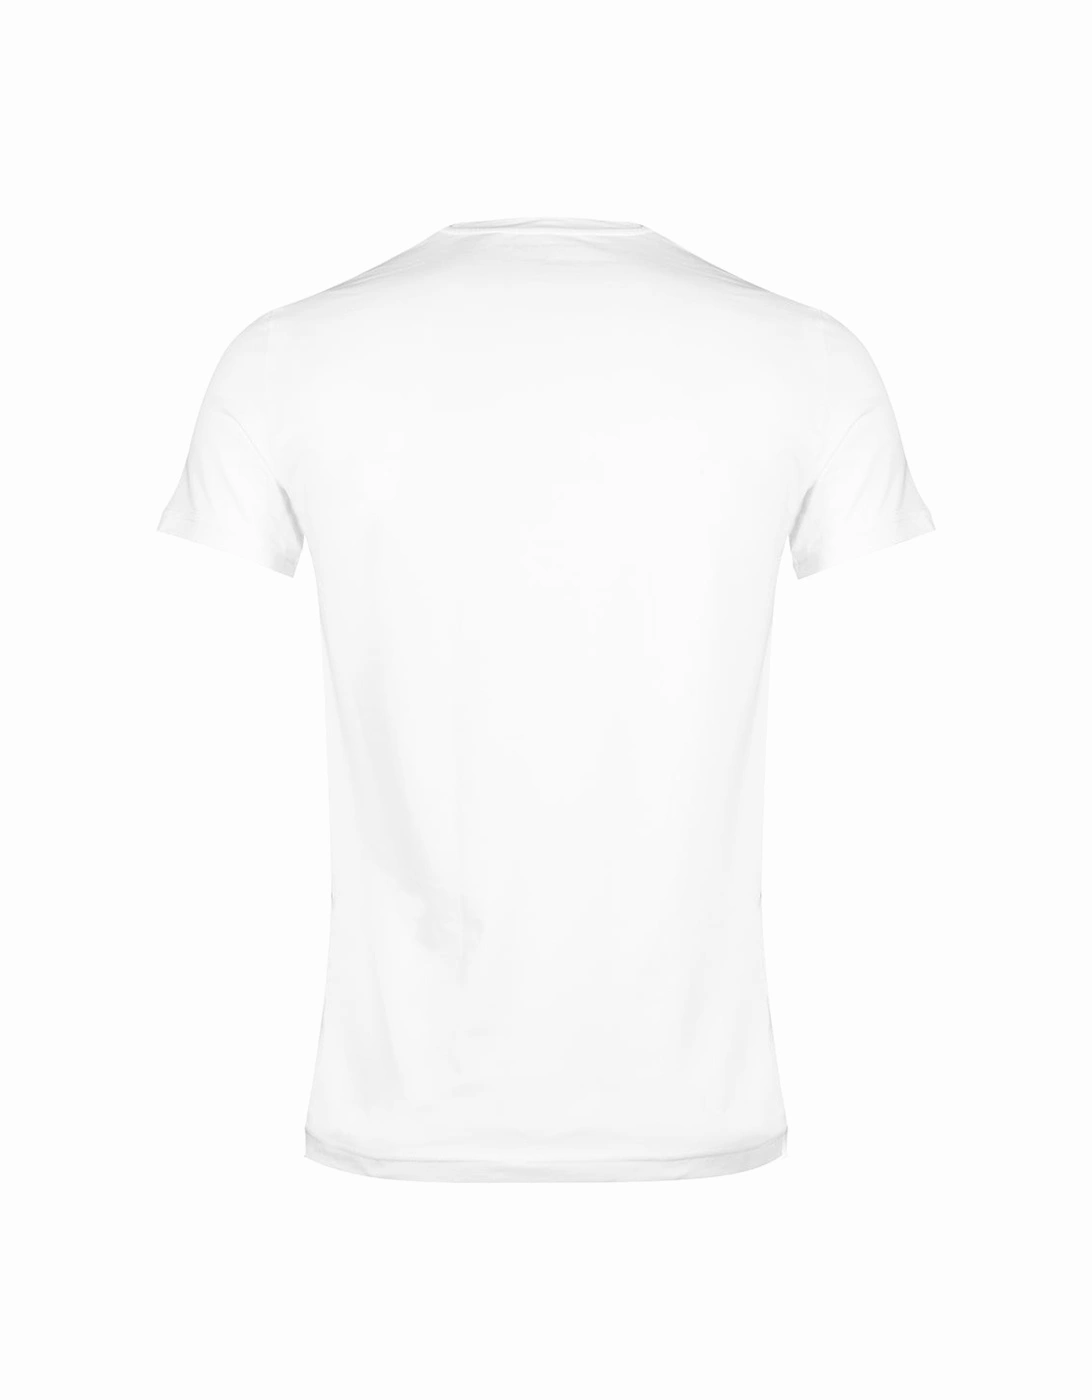 2-Pack Monogram T-Shirts, Grey/White